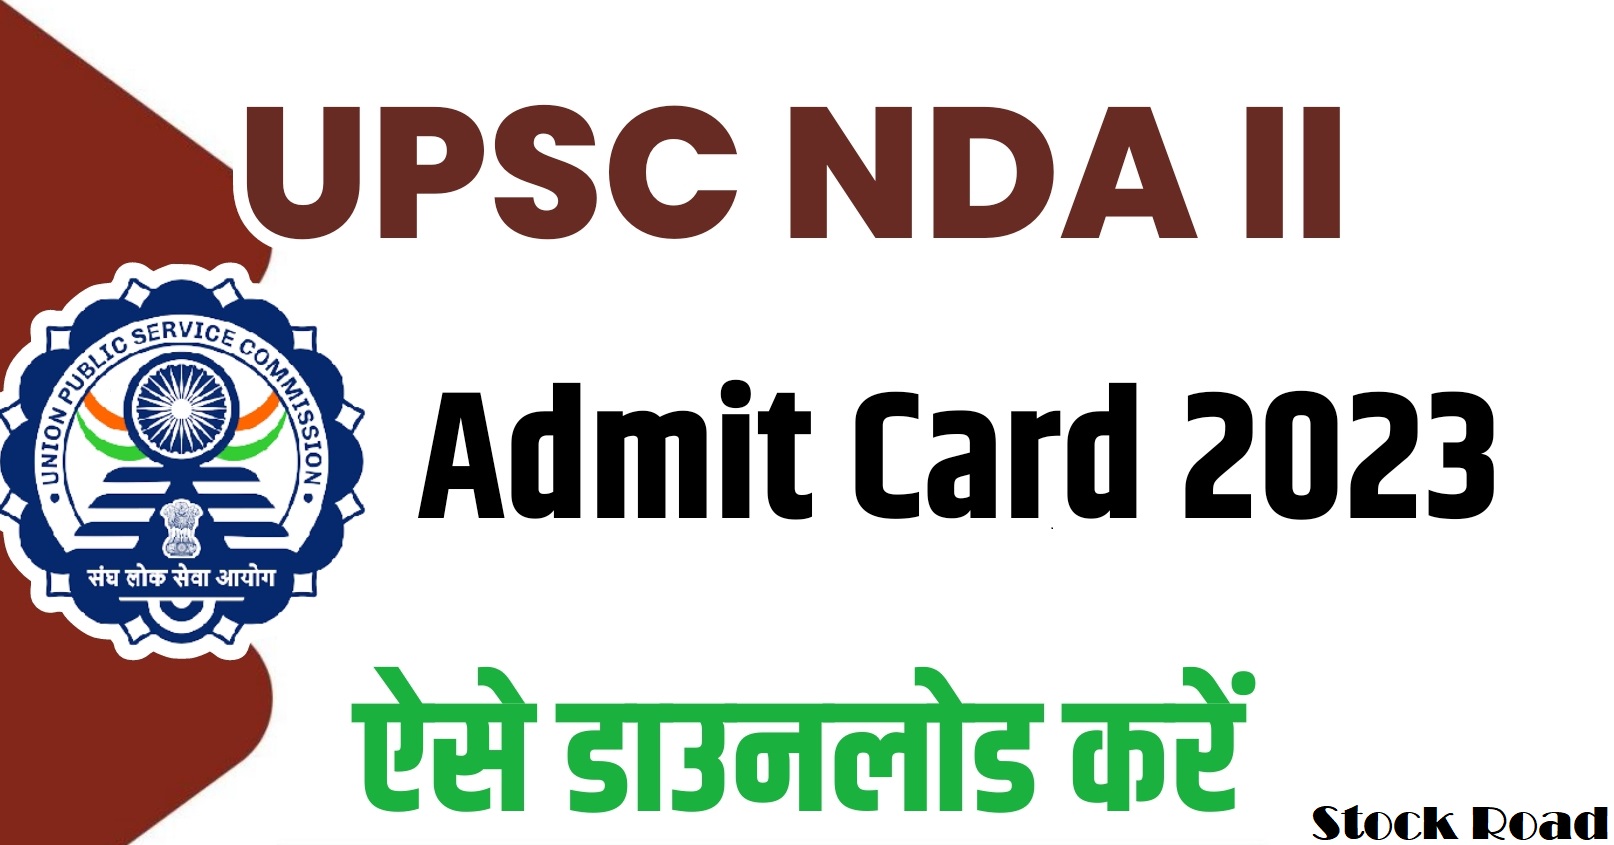 यूपीएससी एनडीए 2 का एडमिट कार्ड जारी:3 सितंबर 2023 तक डाउनलोड (UPSC NDA 2 Admit Card Released: Download by 3 September 2023)